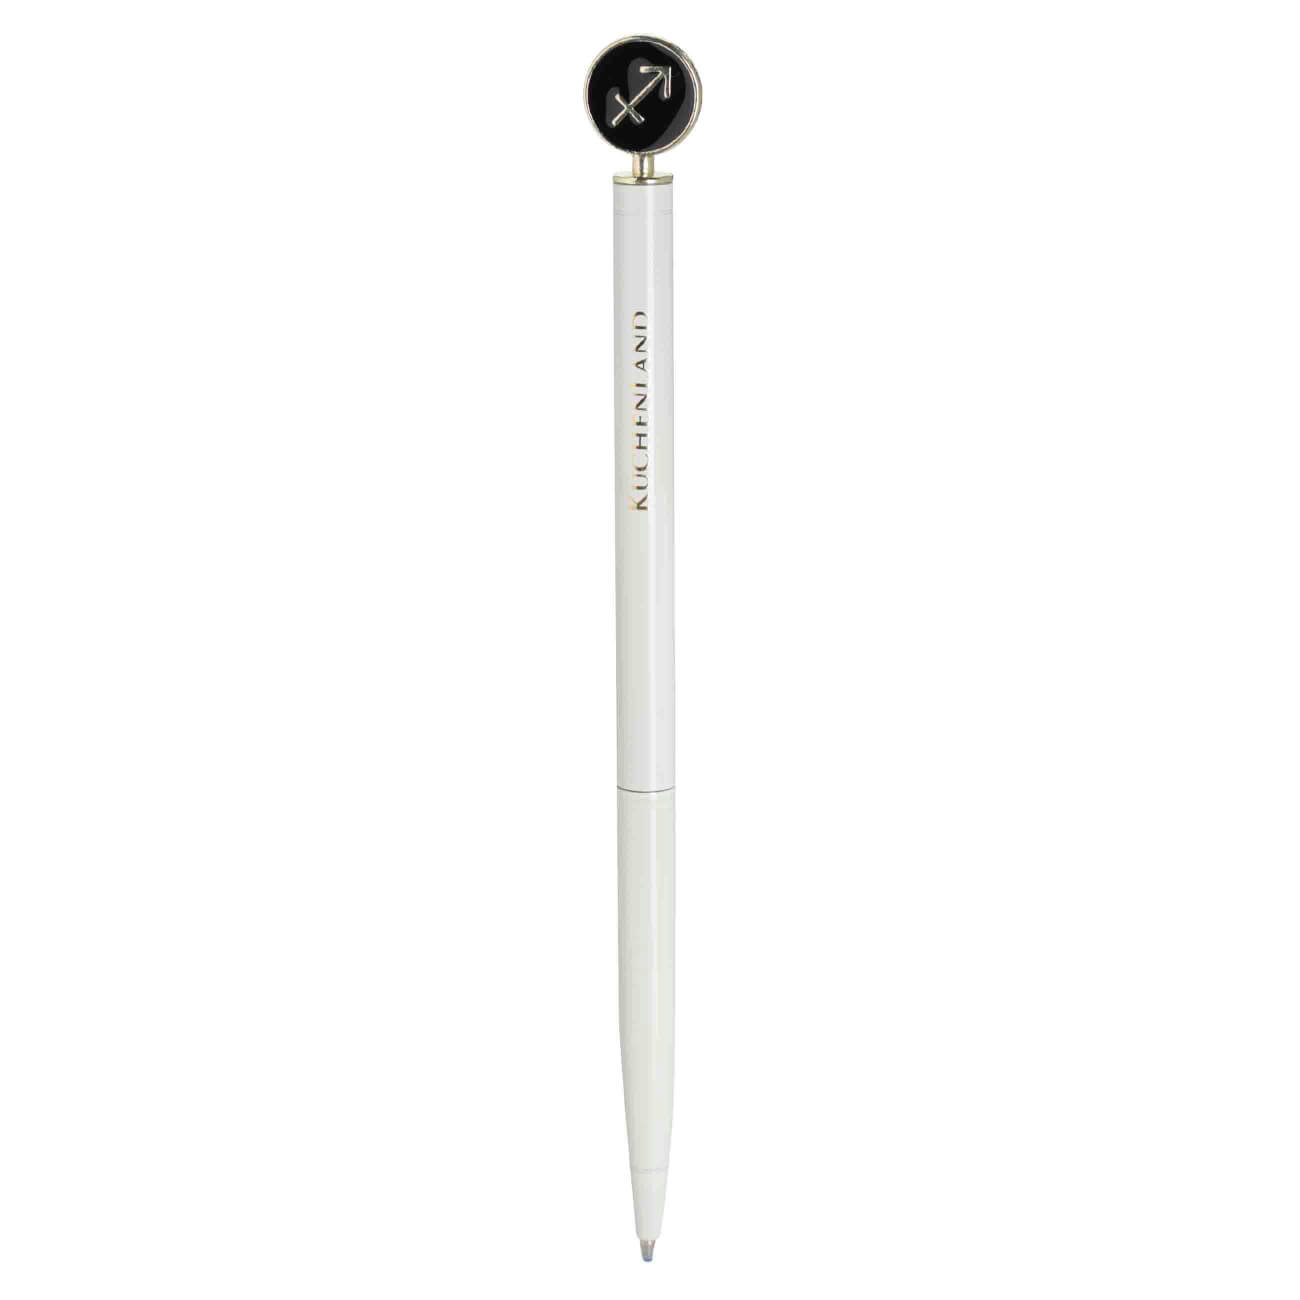 Ручка шариковая, 15 см, с фигуркой, сталь, молочно-золотистая, Стрелец, Zodiac brass rollerball ручка